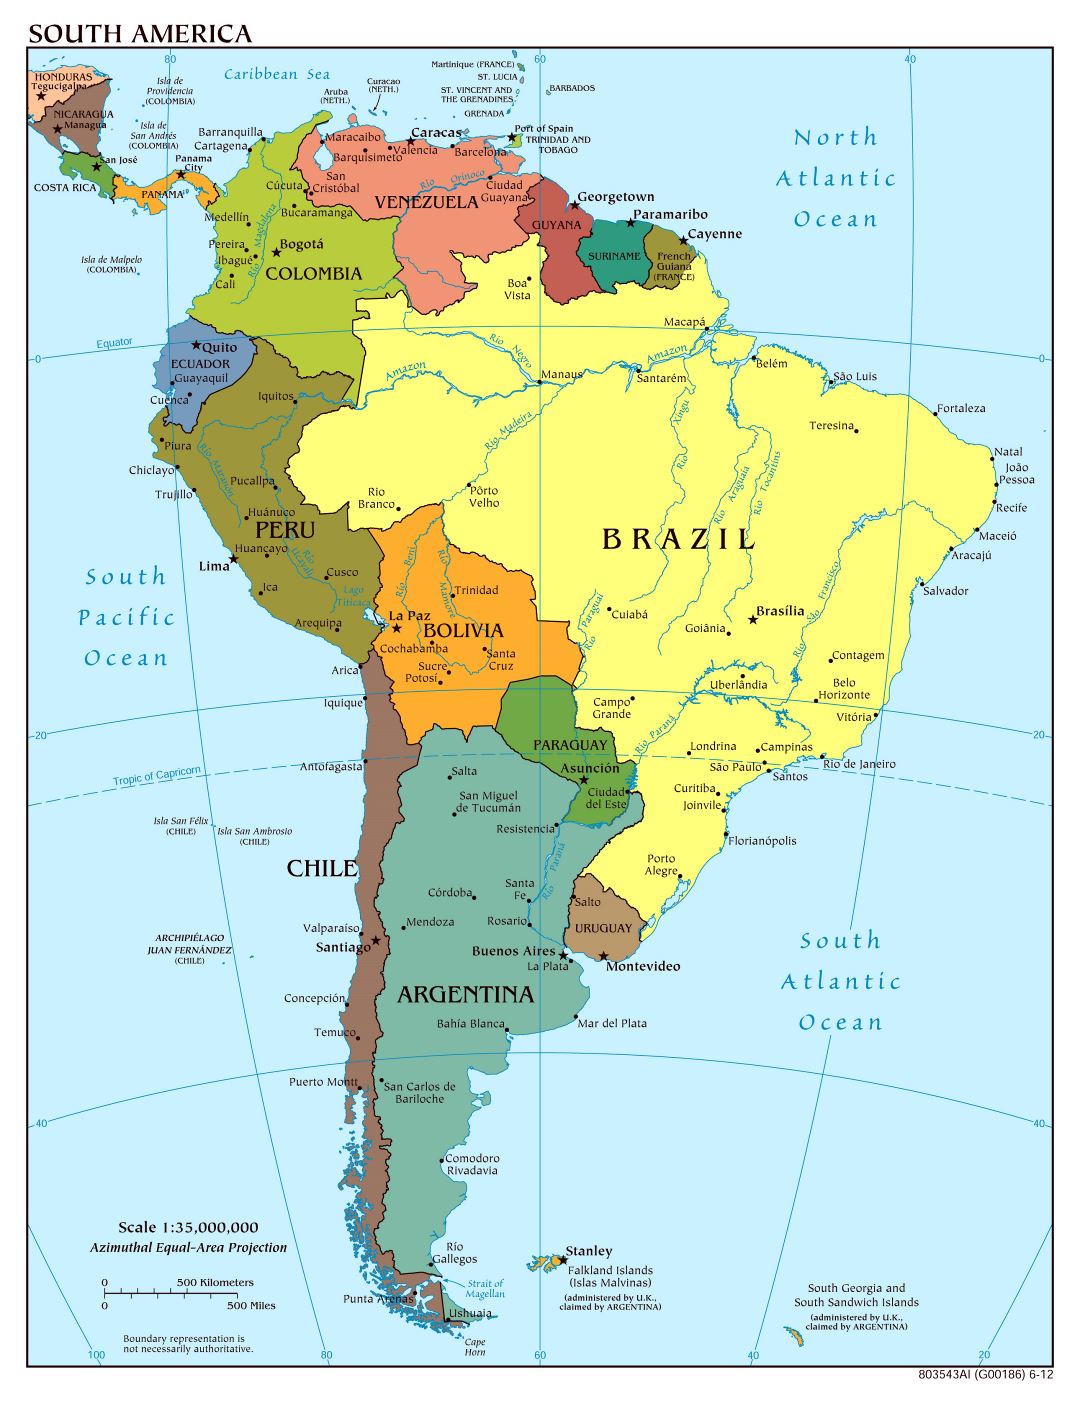 Mapa político a gran escala de América del Sur con las principales ciudades y capitales - 2012